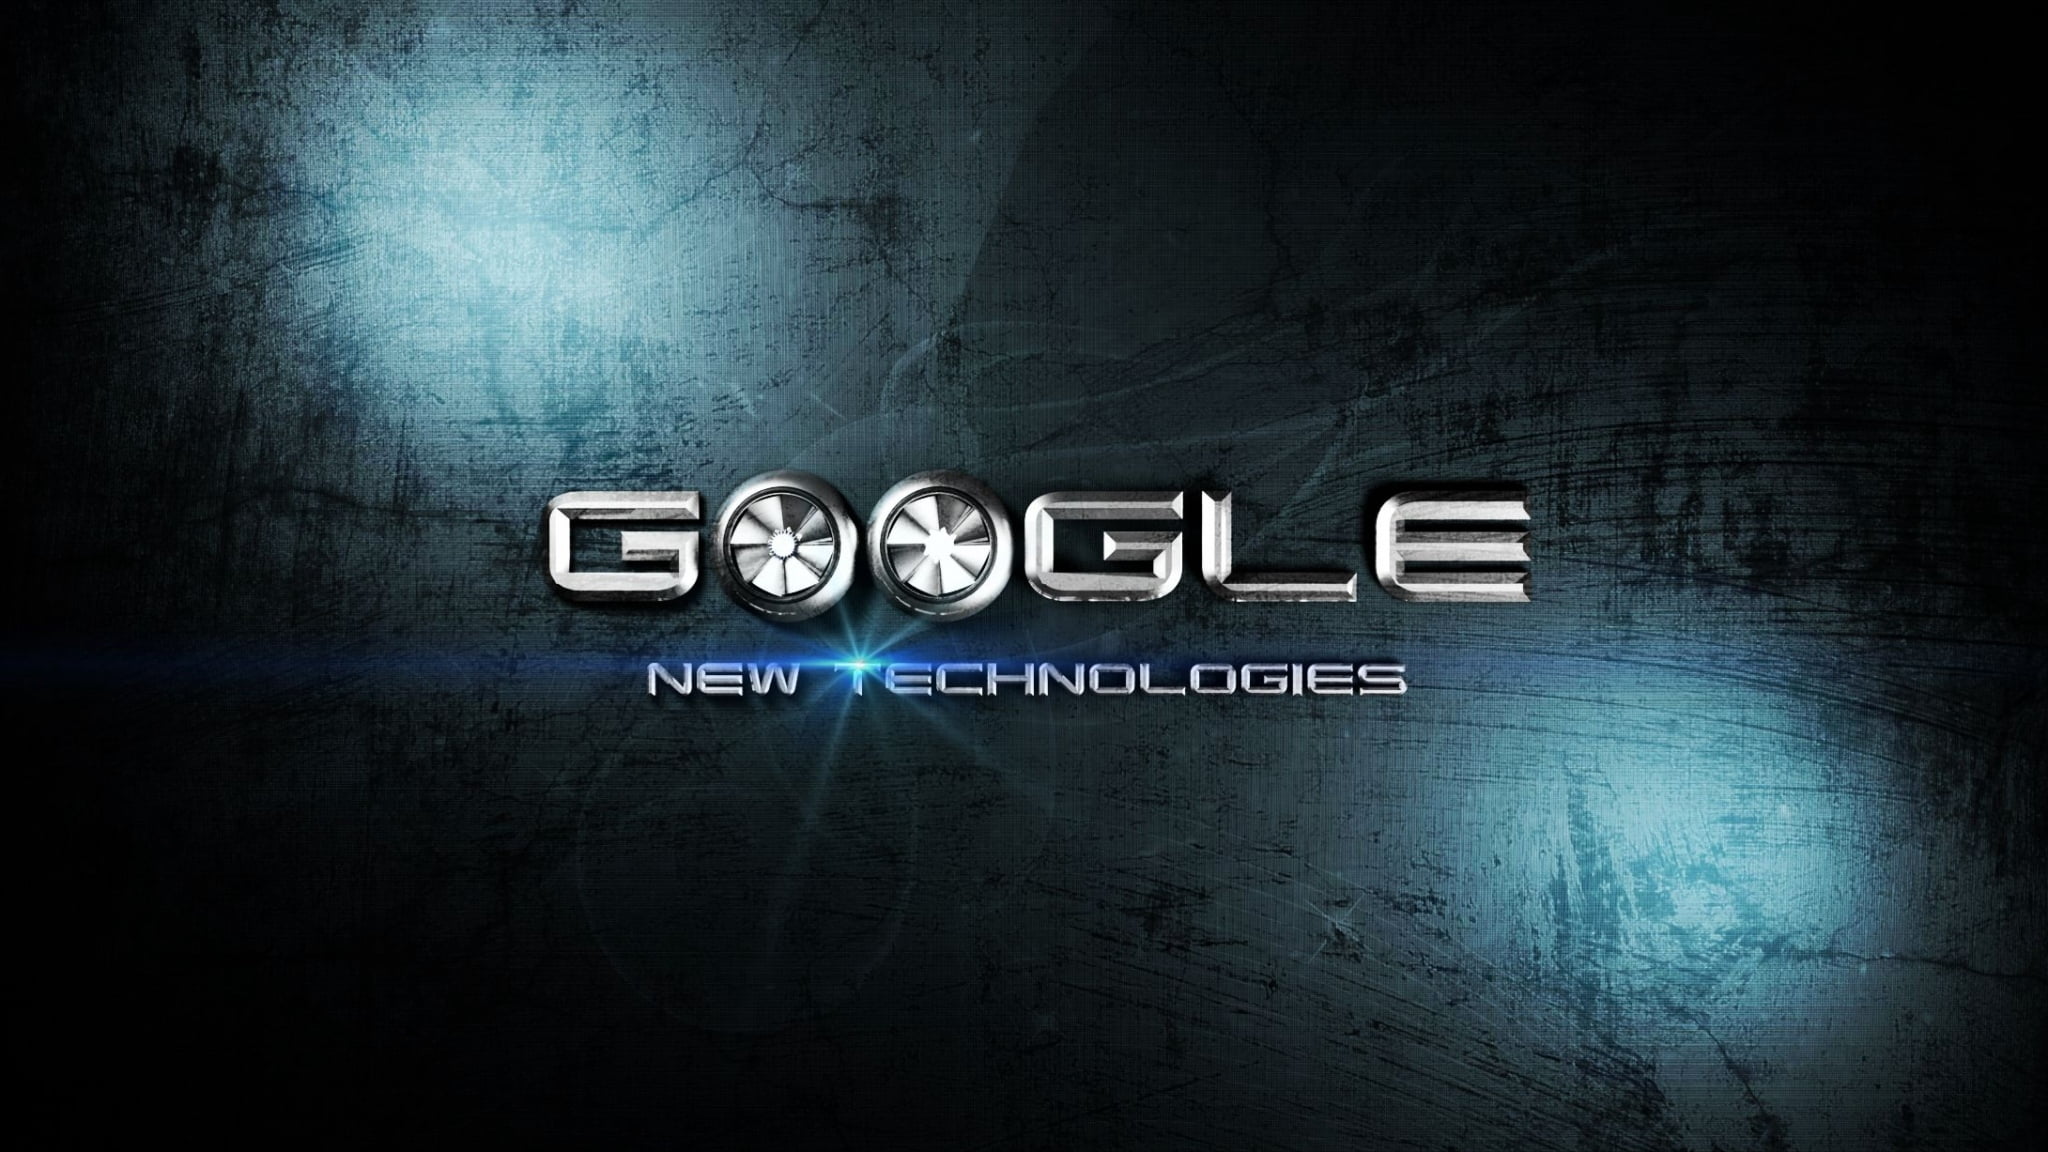 Google text, krass, hi-tech, new technologies, backgrounds, abstract